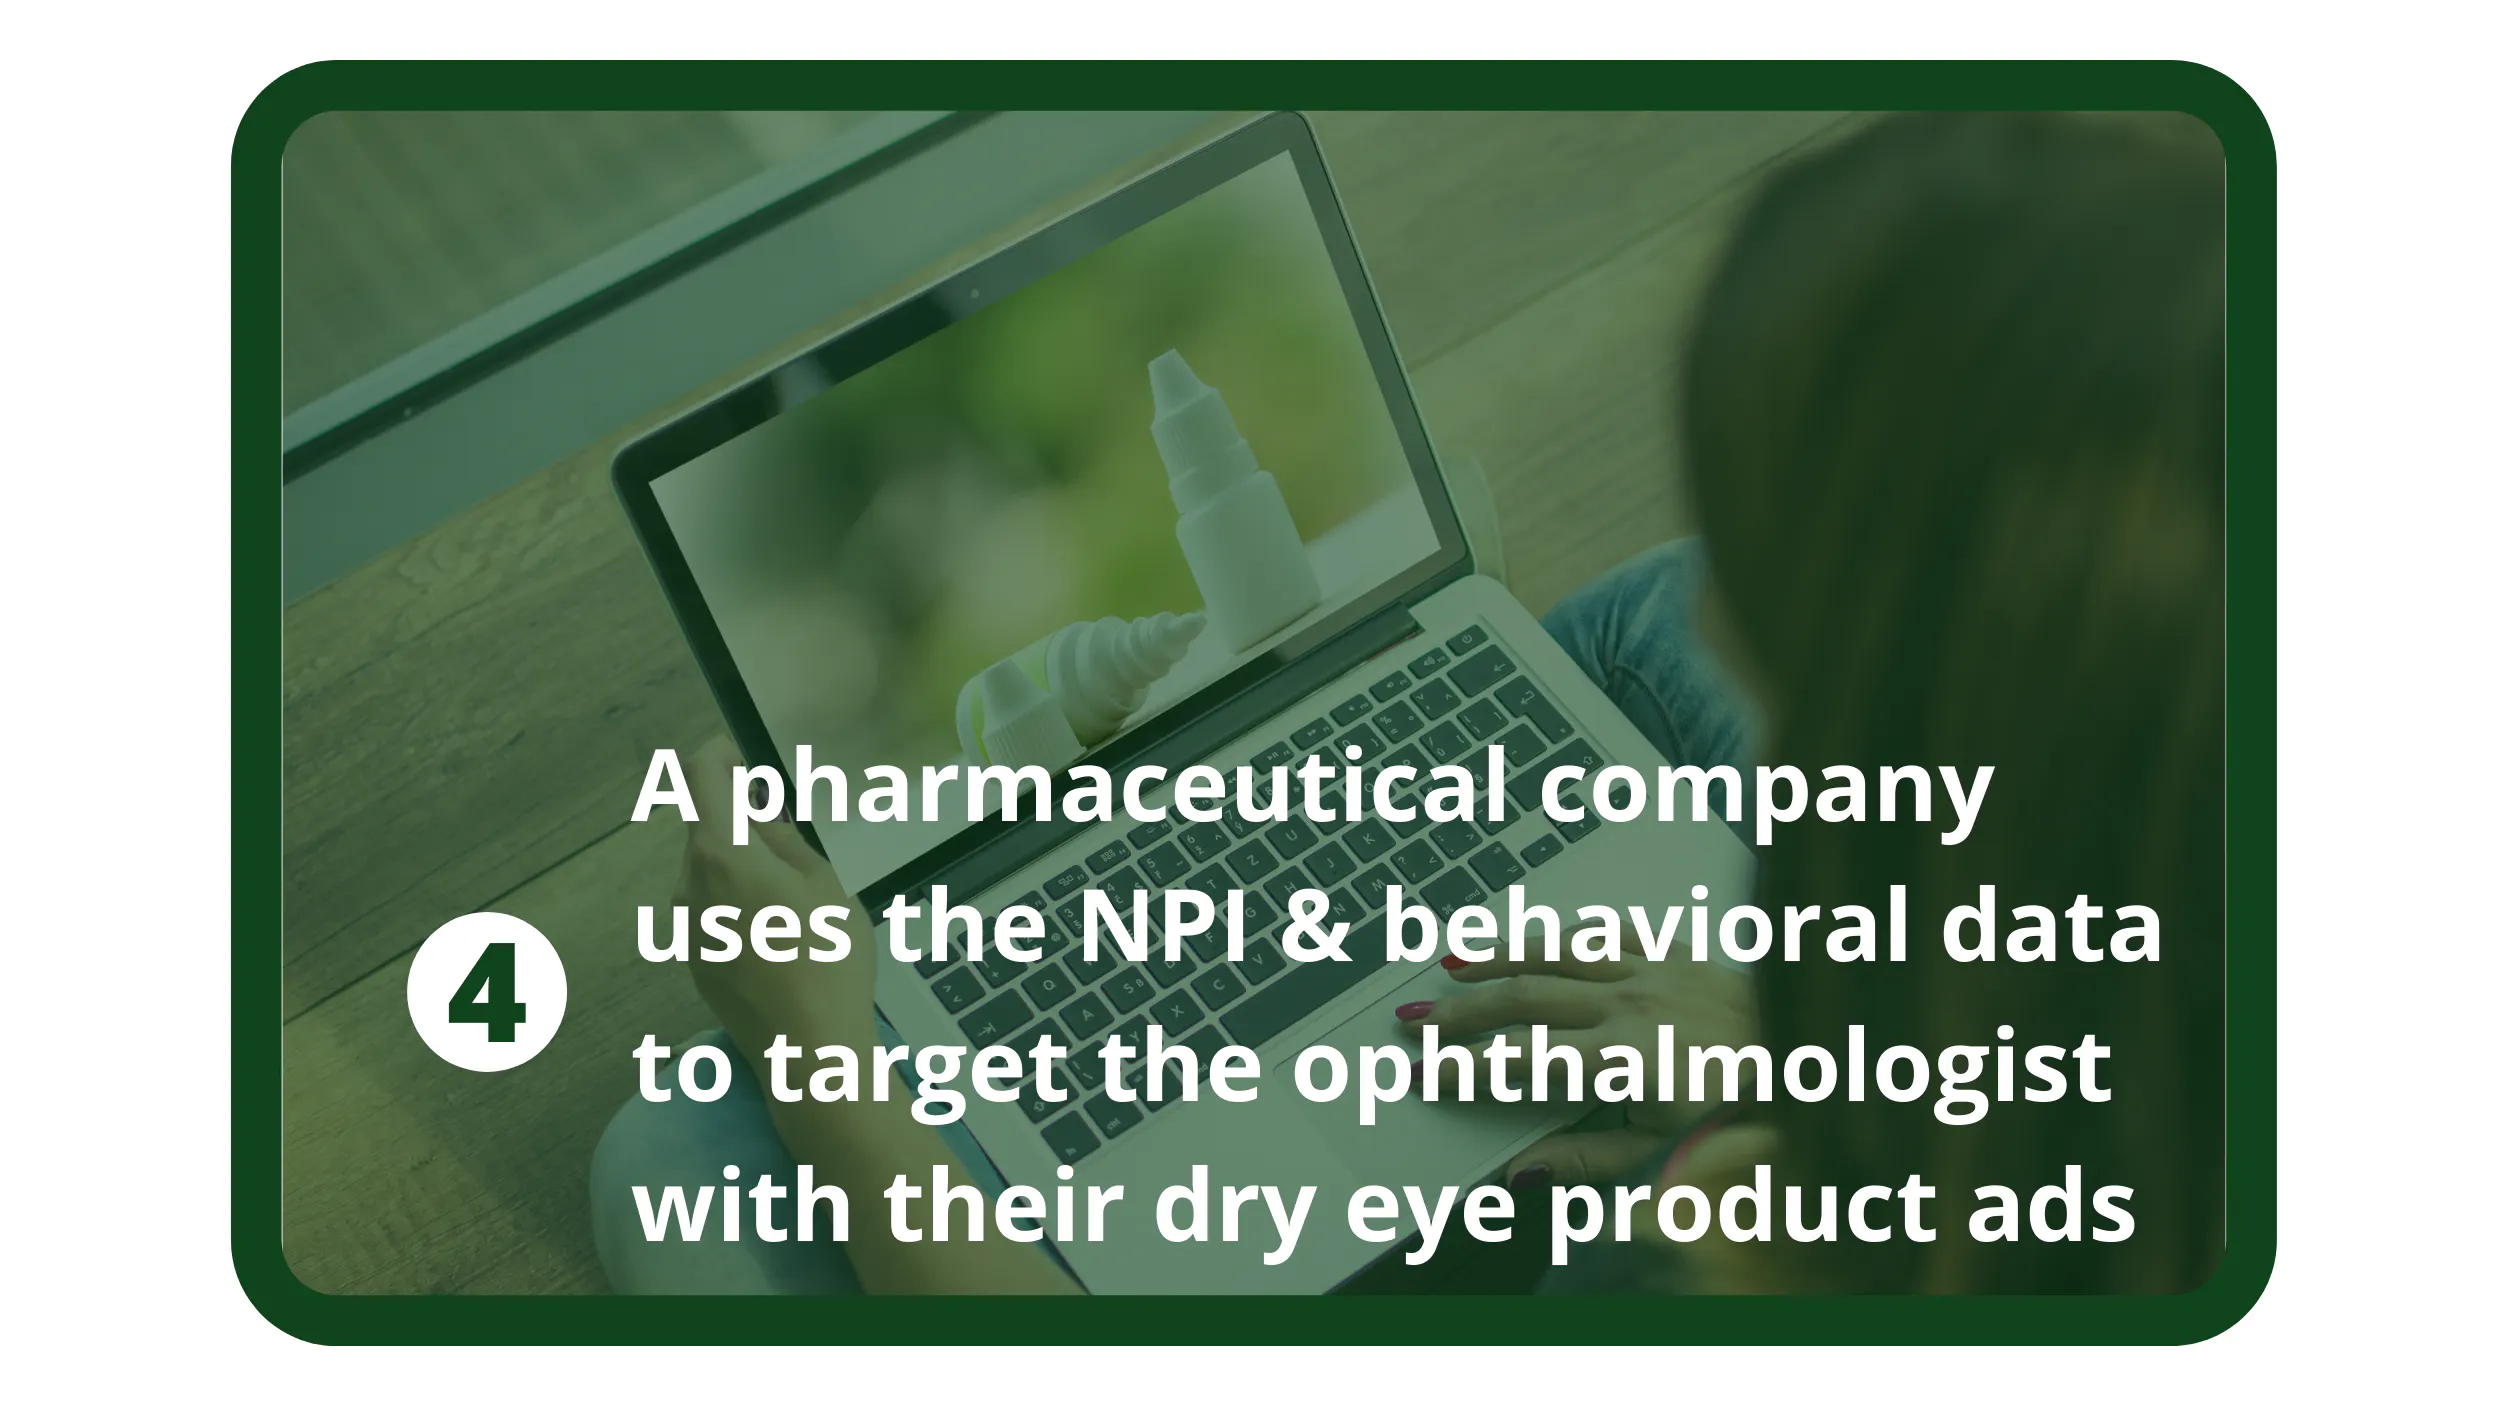 製薬会社がNPIと行動データを利用して眼科医にドライアイ製品の広告を打つ